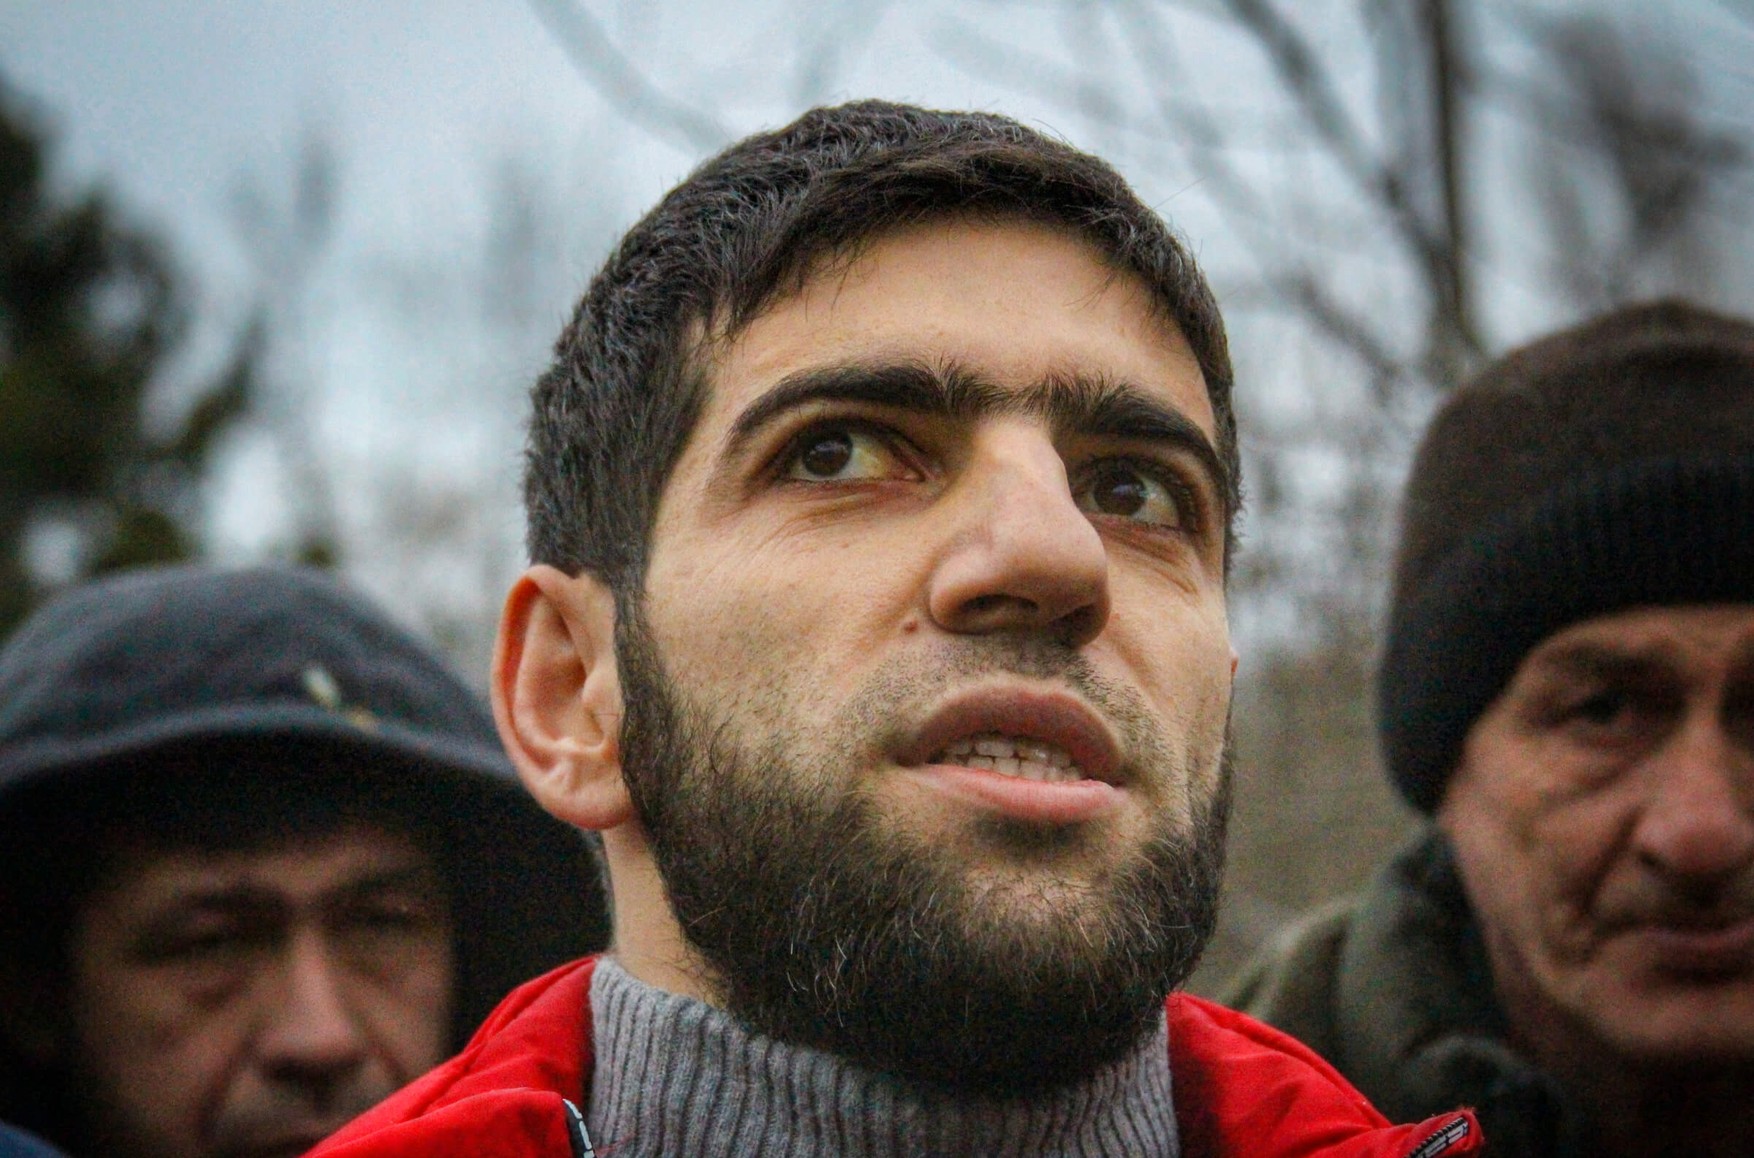 Крымскотатарский активист Энвер Крош рассказал, что его пытали по пути на допрос